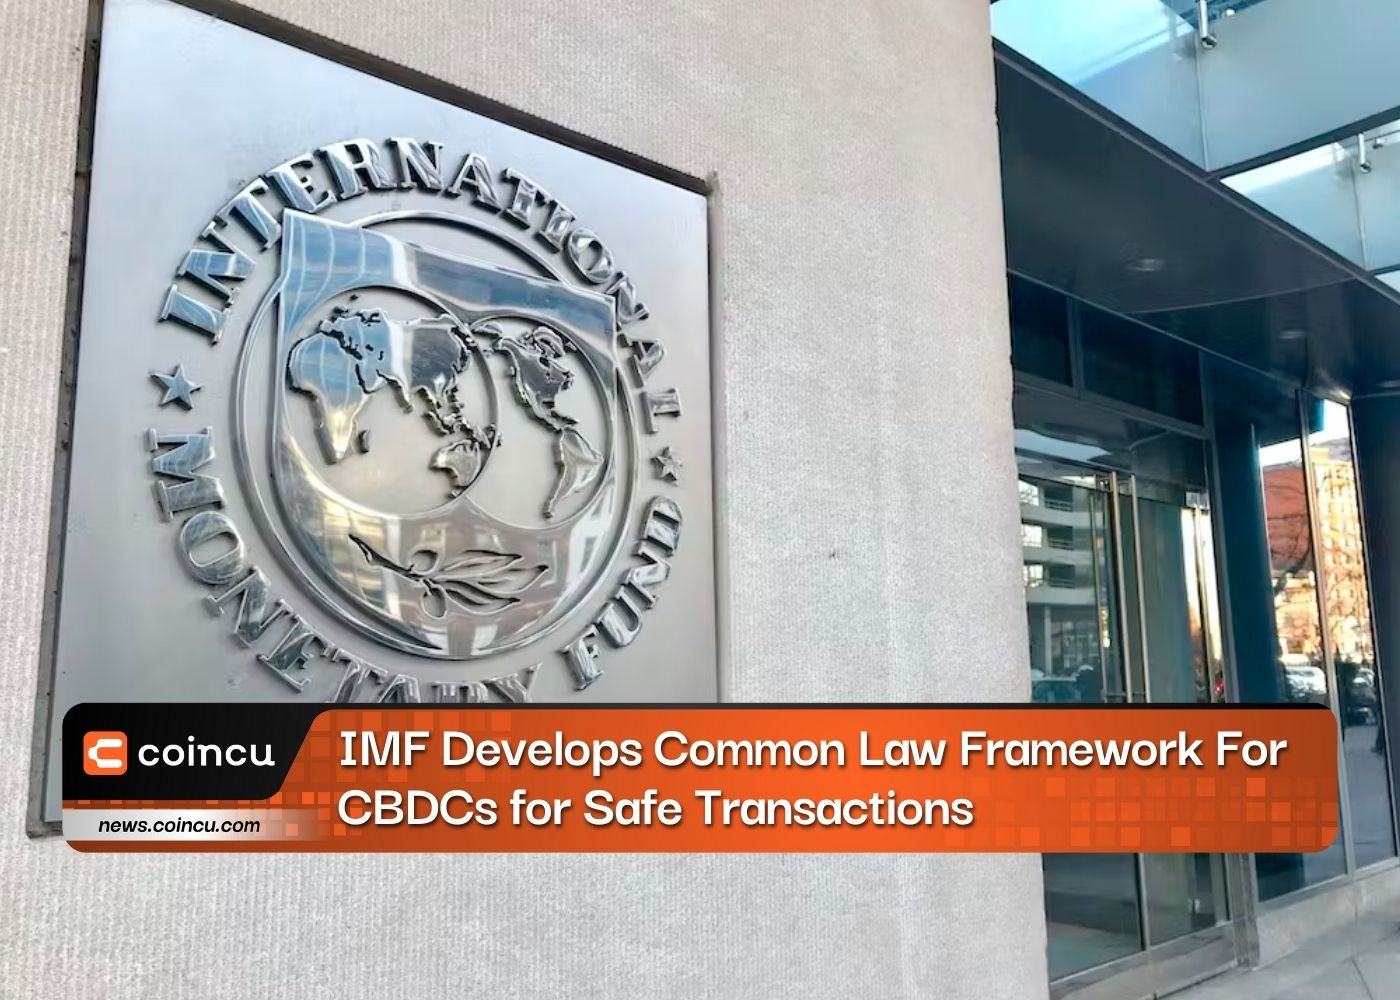 IMF Develops Common Law Framework For CBDCs for Safe Transactions